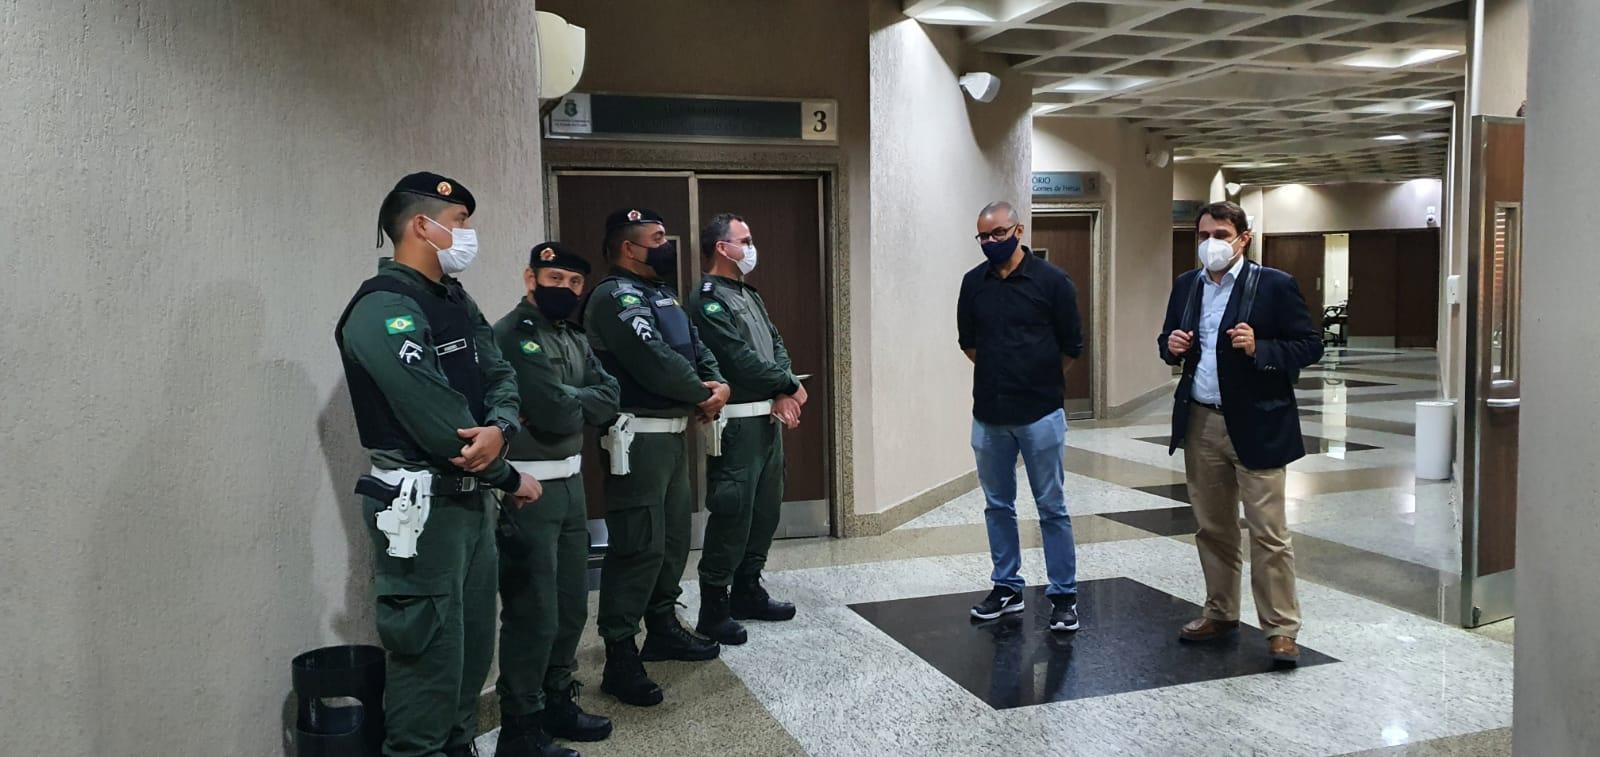 Depoente deixa a sala da CPI acompanhado do deputado Salmito Filho e de agentes da Polícia Militar